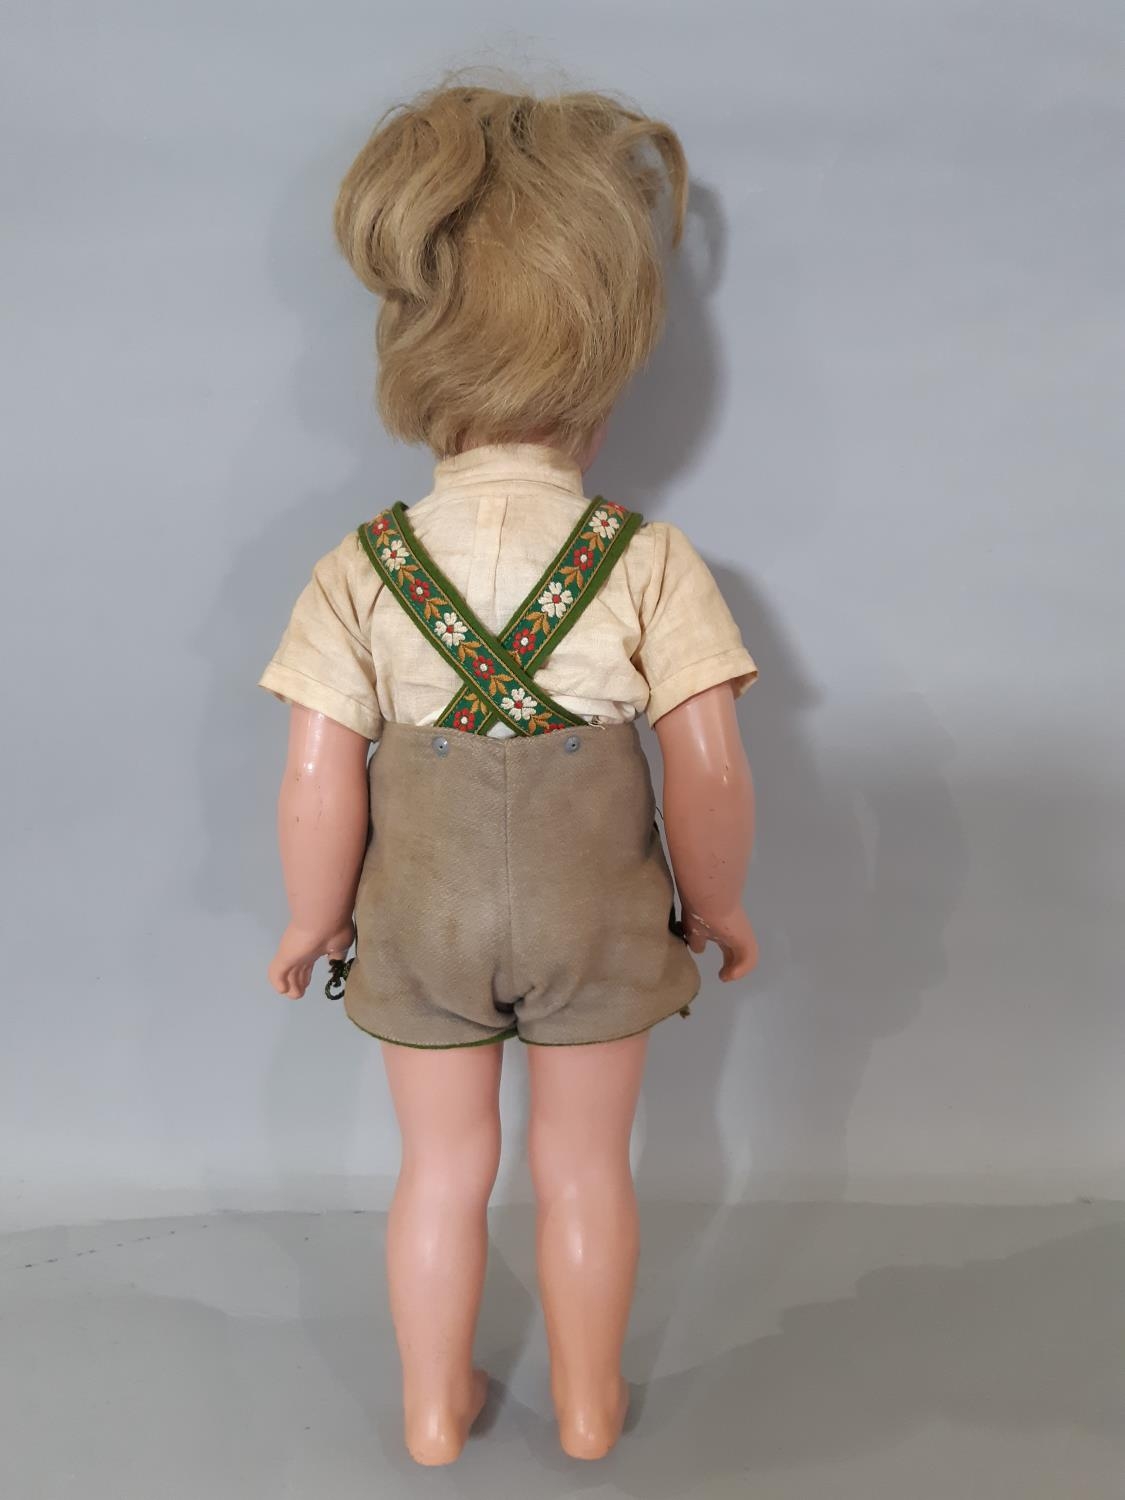 A 'Schildkroete' doll by Kathe Kruse / Rheinische Gummi Company, (1955-1961) made of tortulon, 'T45' - Bild 4 aus 5